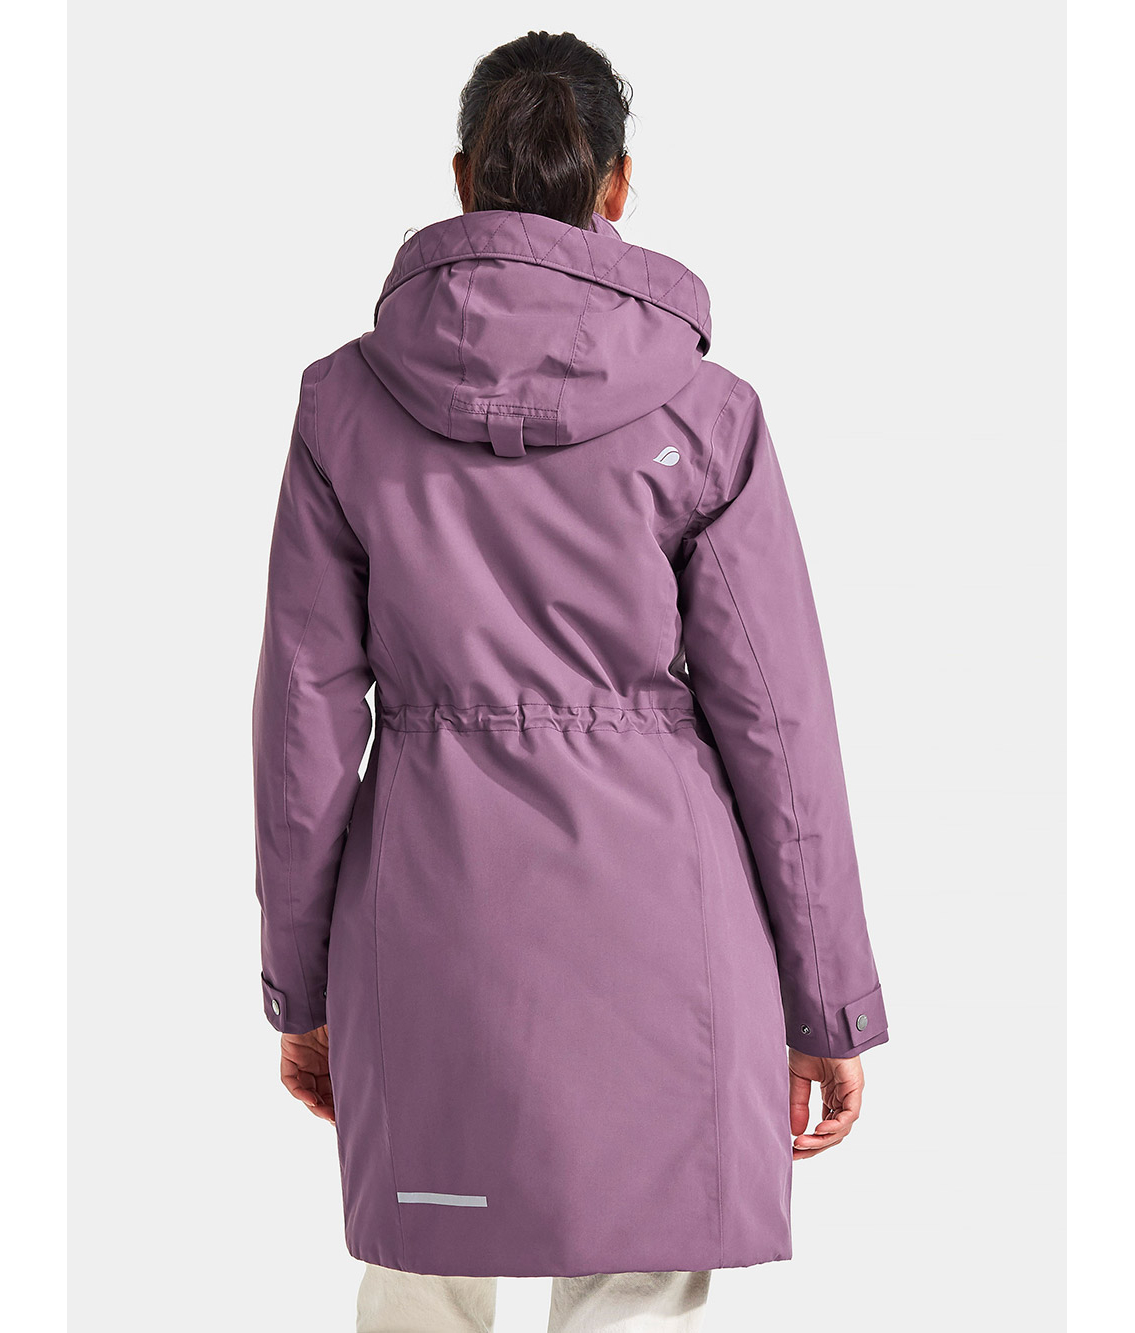 Куртка женская EMILIA — Didriksons 1913 — 503150 — Зимняя одежда для города  — купить в интернет магазине за 13900.00 руб